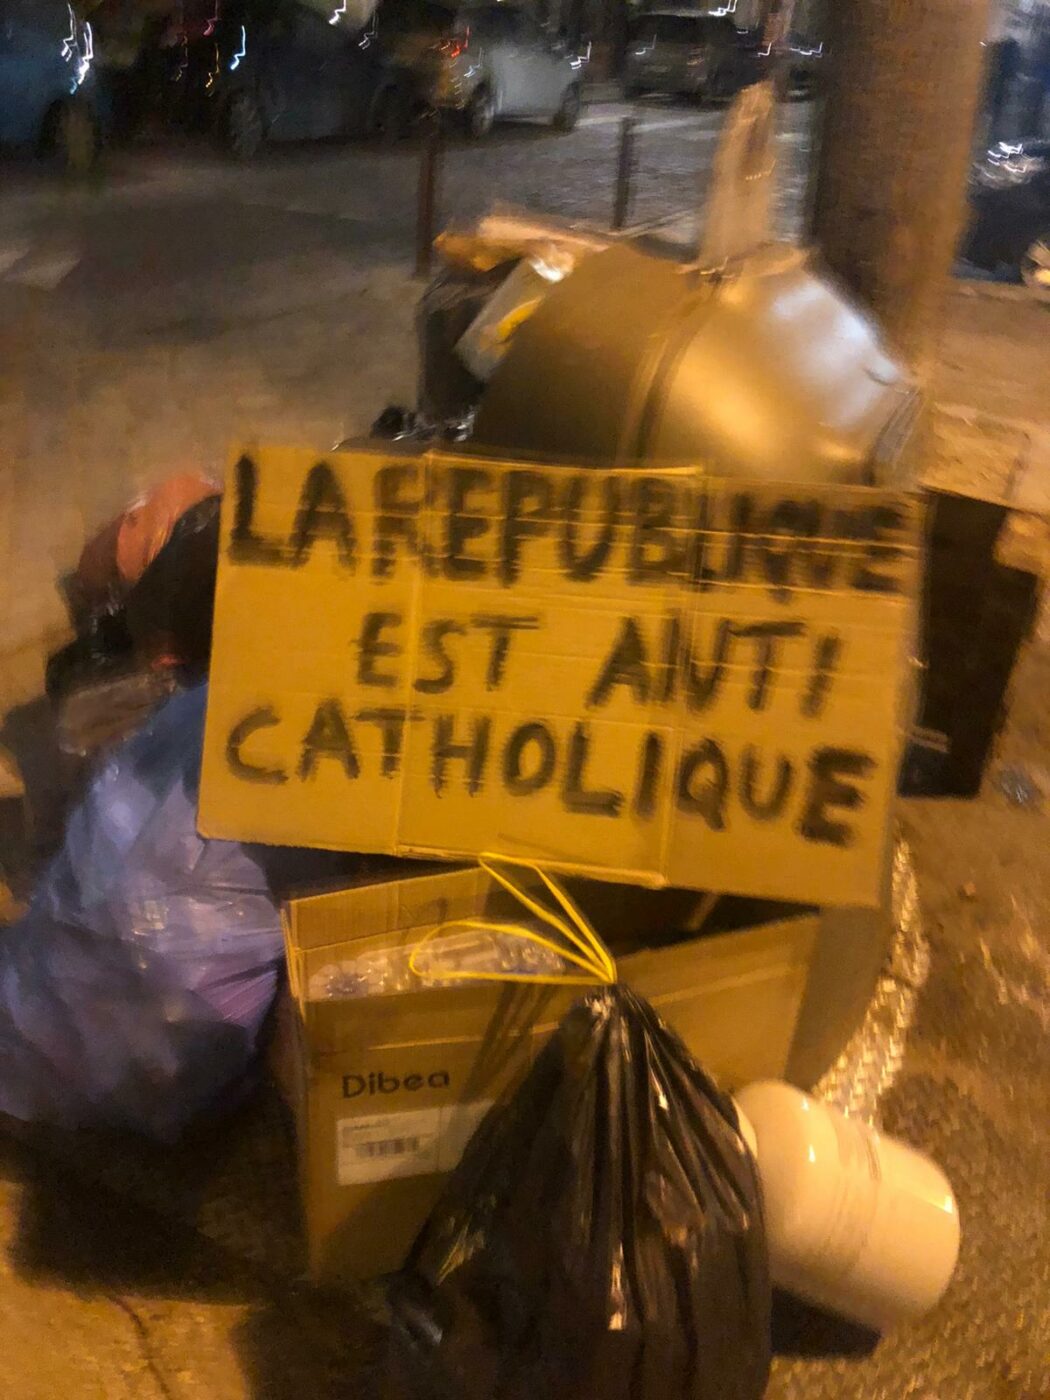 A Saint-Sulpice, les manifestants ont pu prier